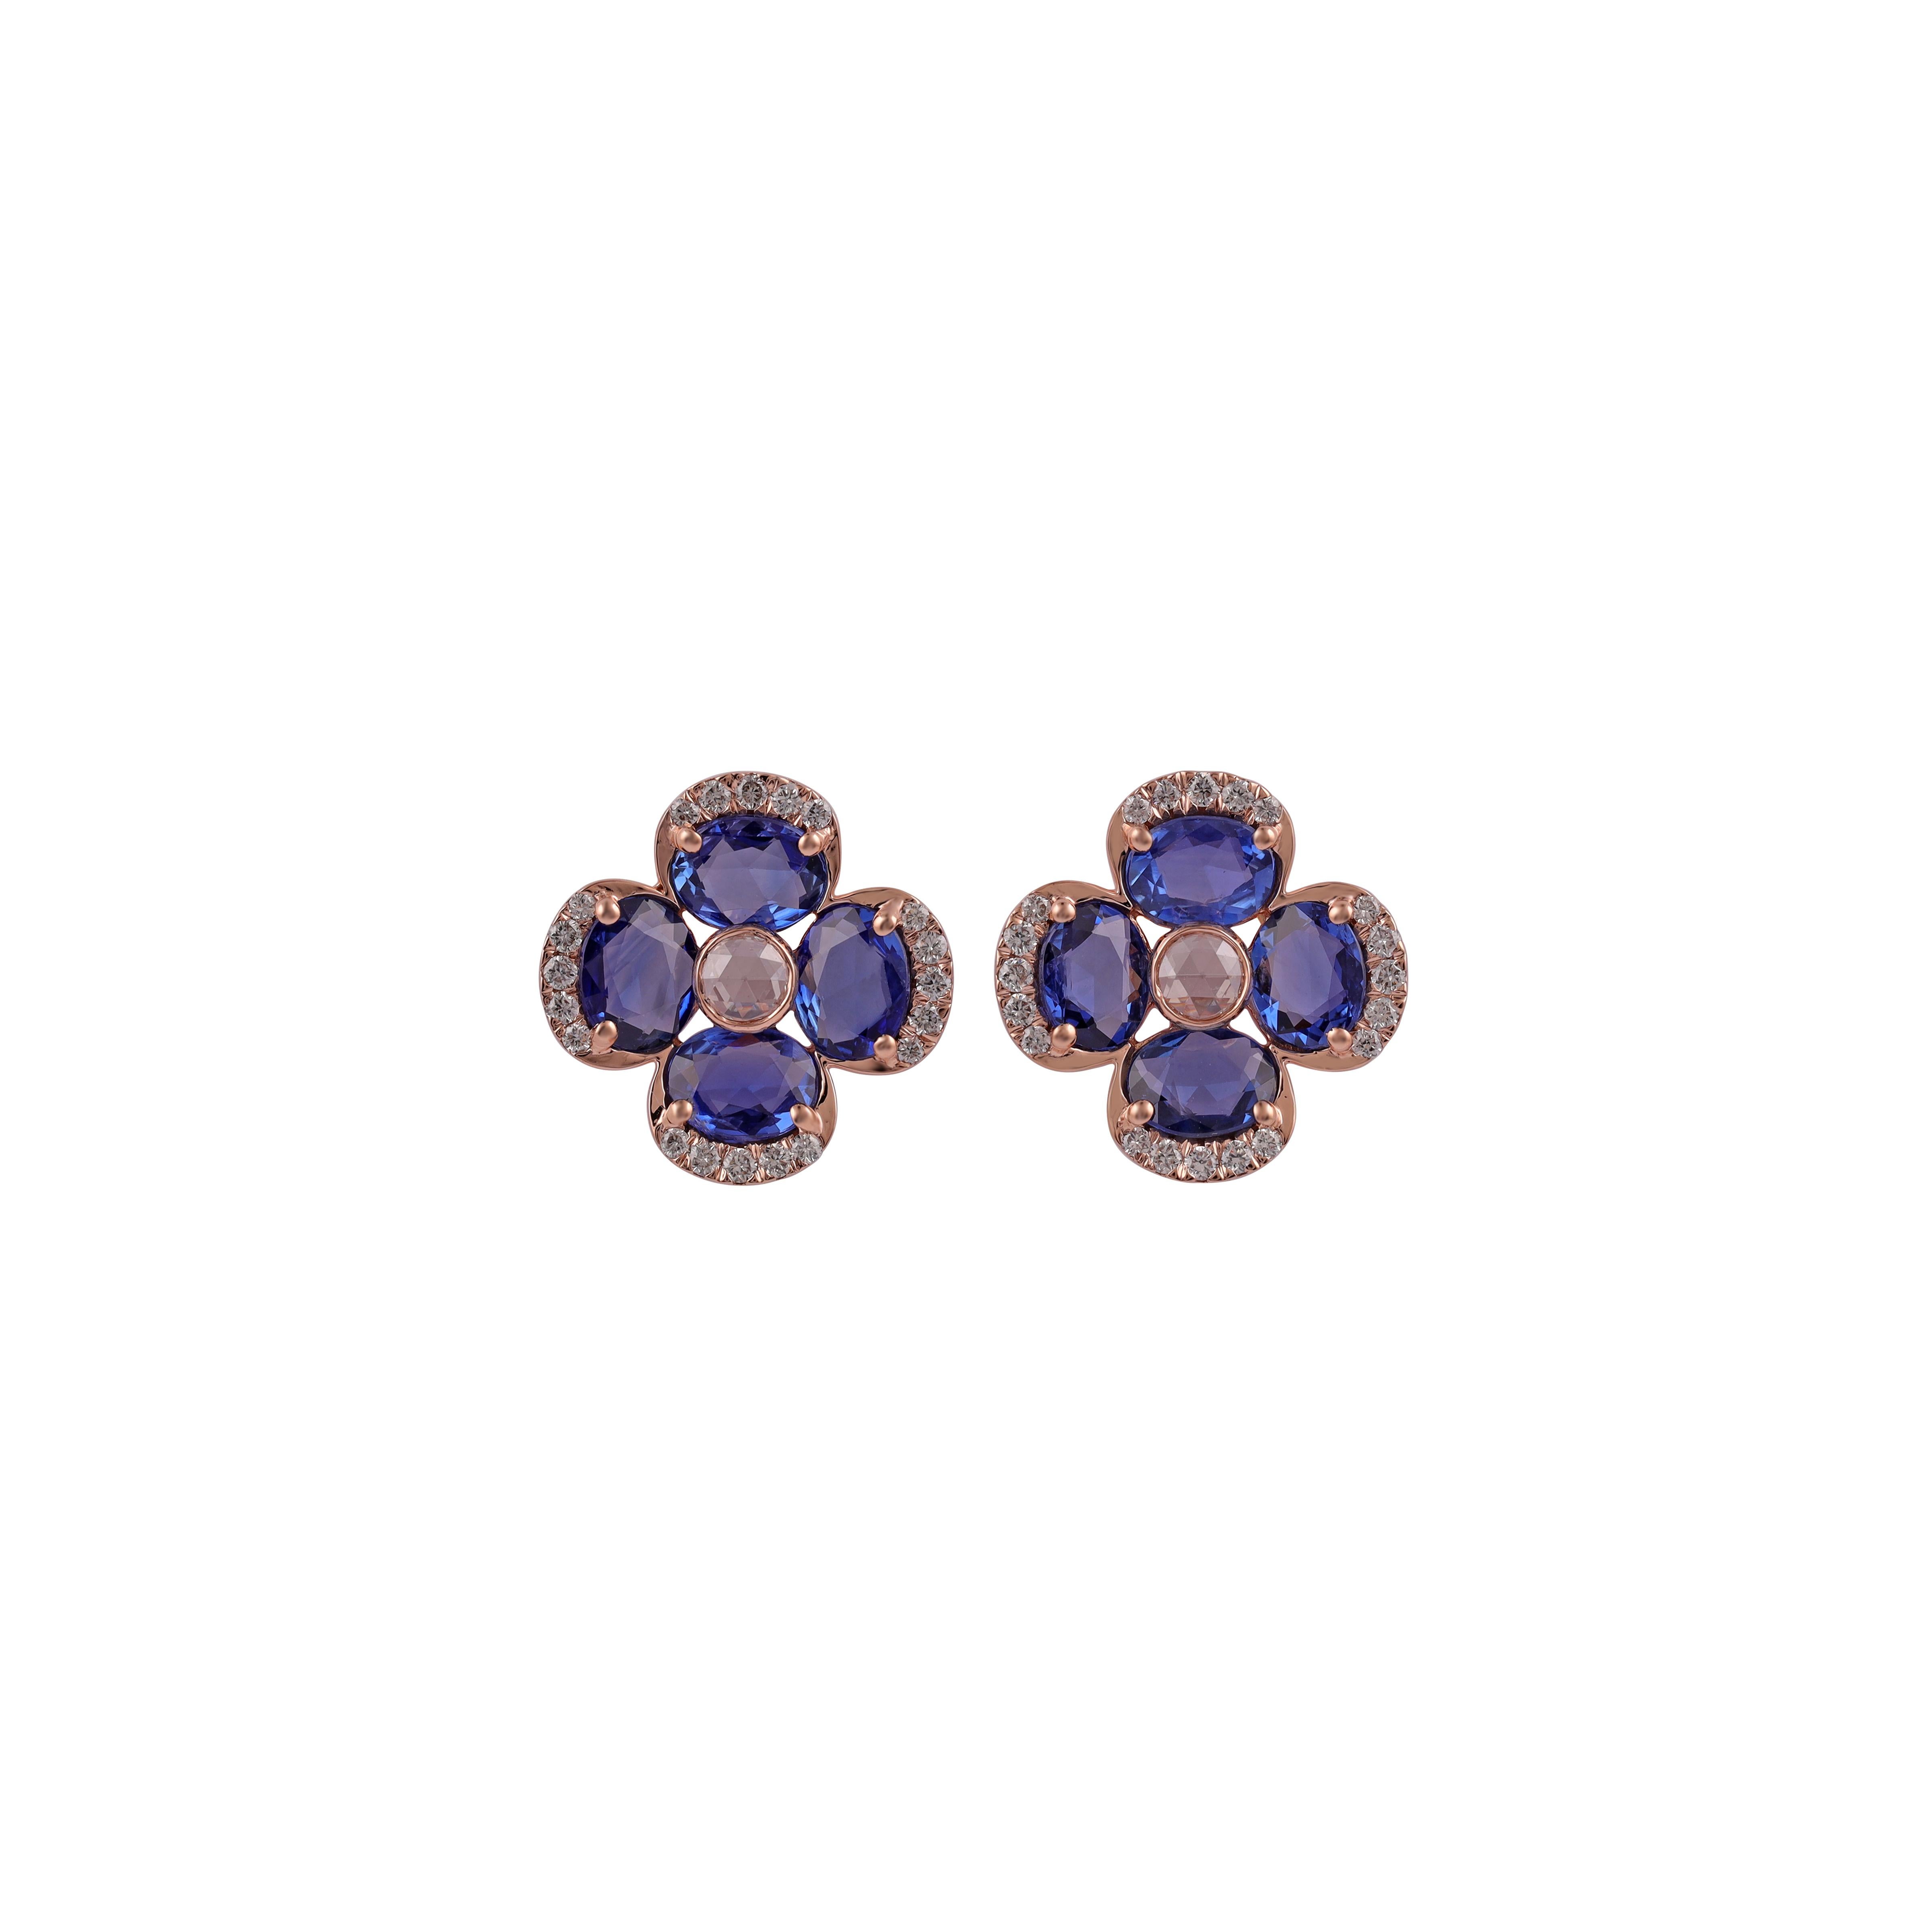 Une paire étonnante, fine et impressionnante de  Saphir bleu de 2,71 carats, diamant rond de 0,22 carat, diamant rose de 0,10 carat, en or rose massif 18k. 

Les clous d'oreilles créent une beauté subtile tout en mettant en valeur les couleurs des